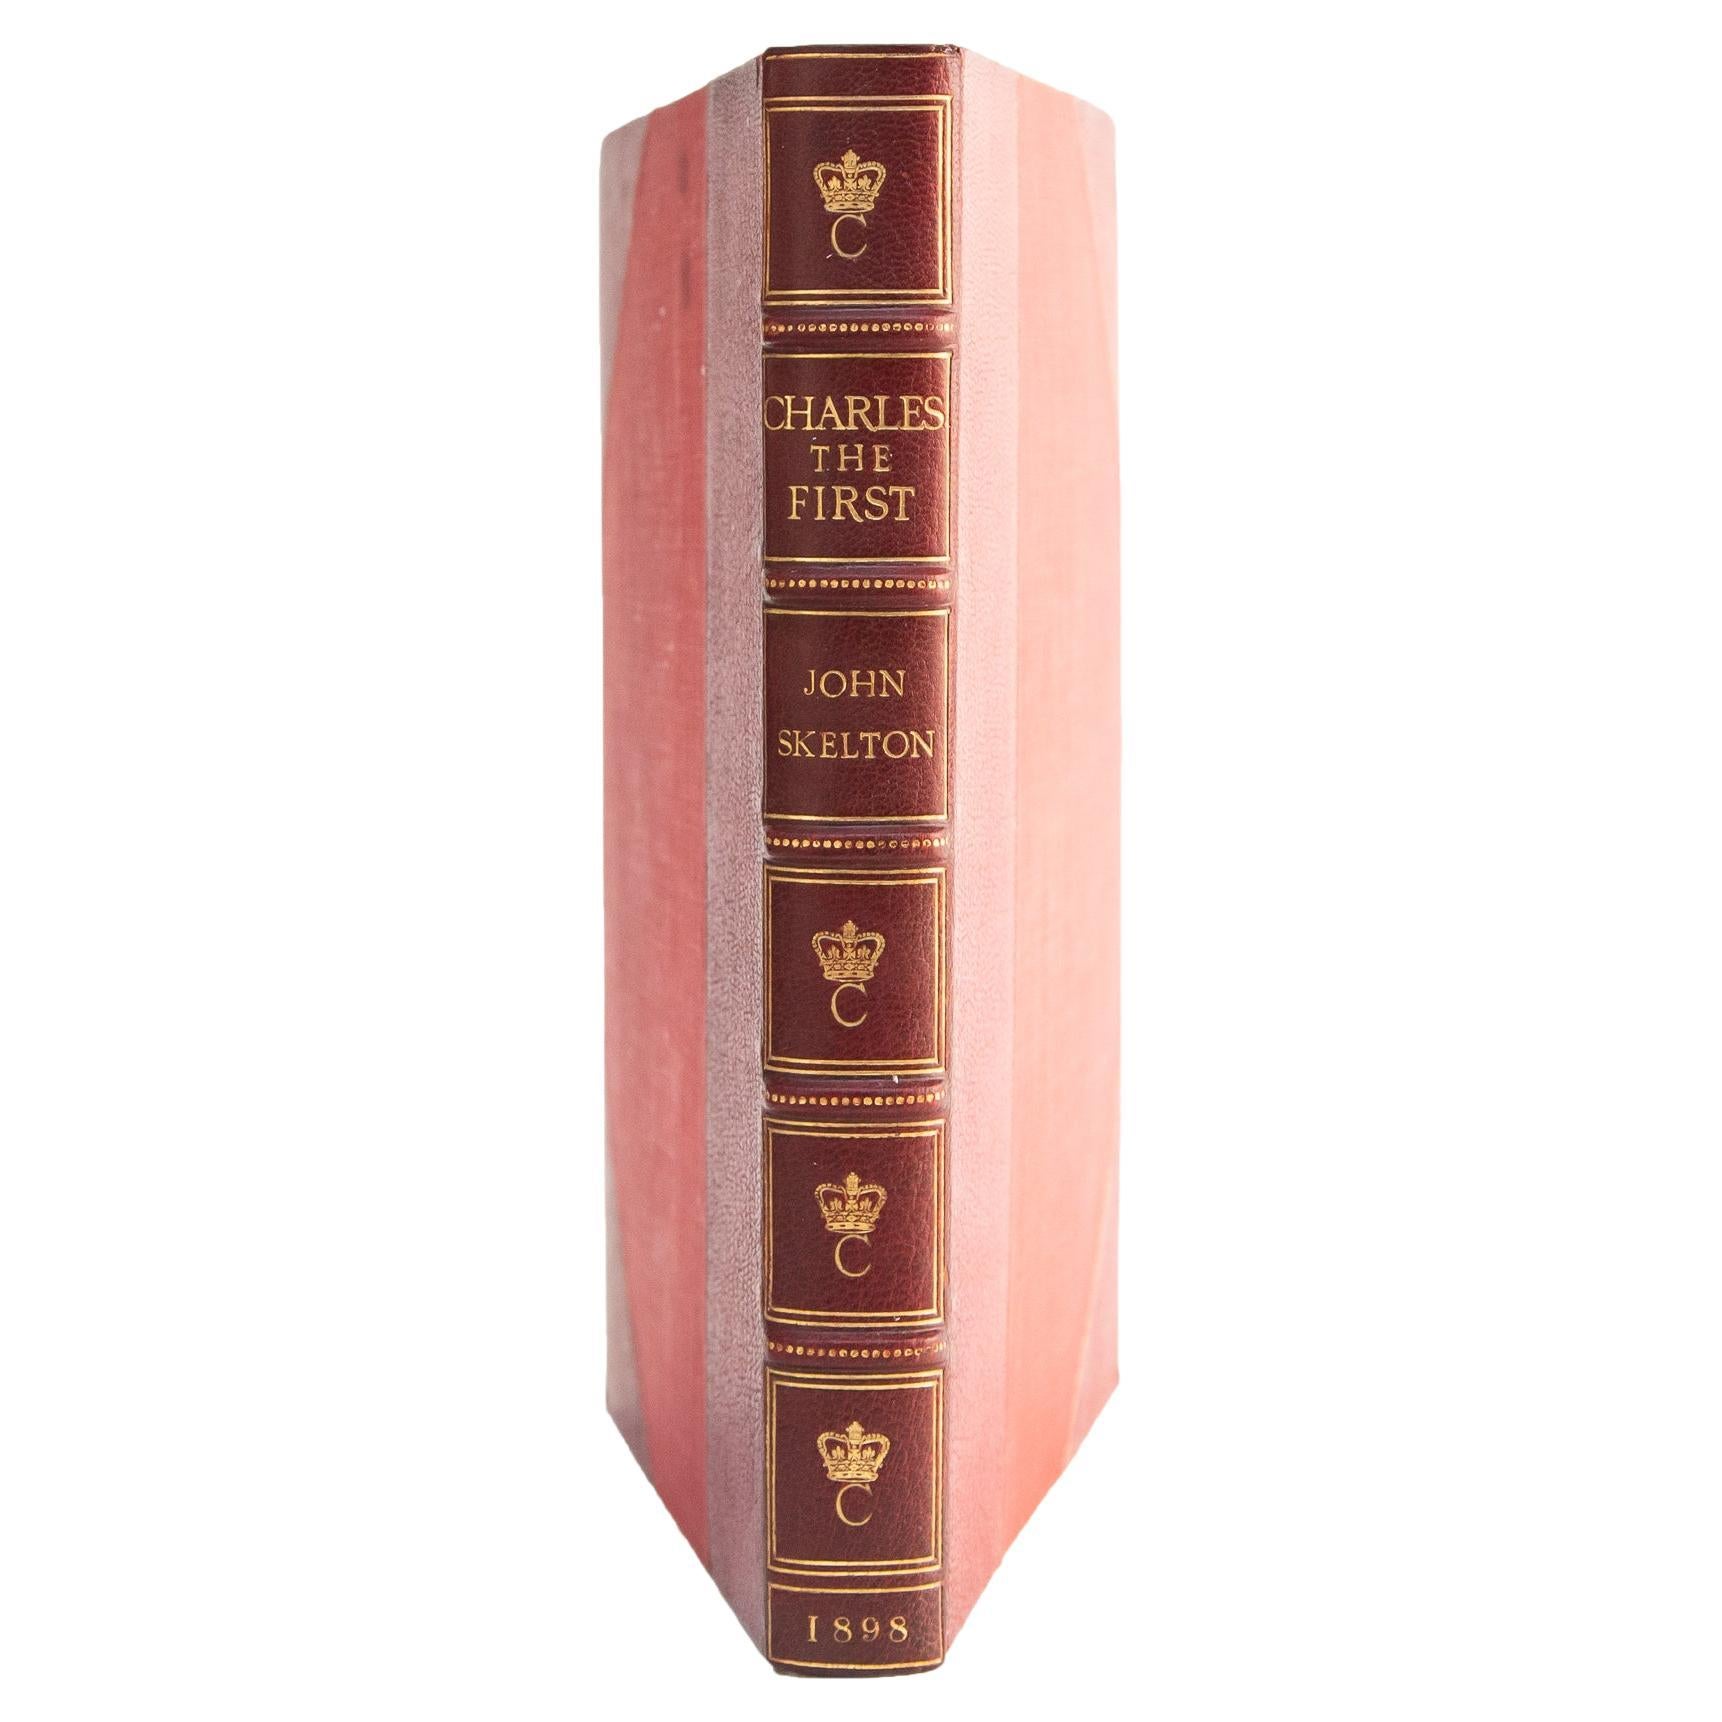 1 Volume, Sir John Skelton, Charles I.